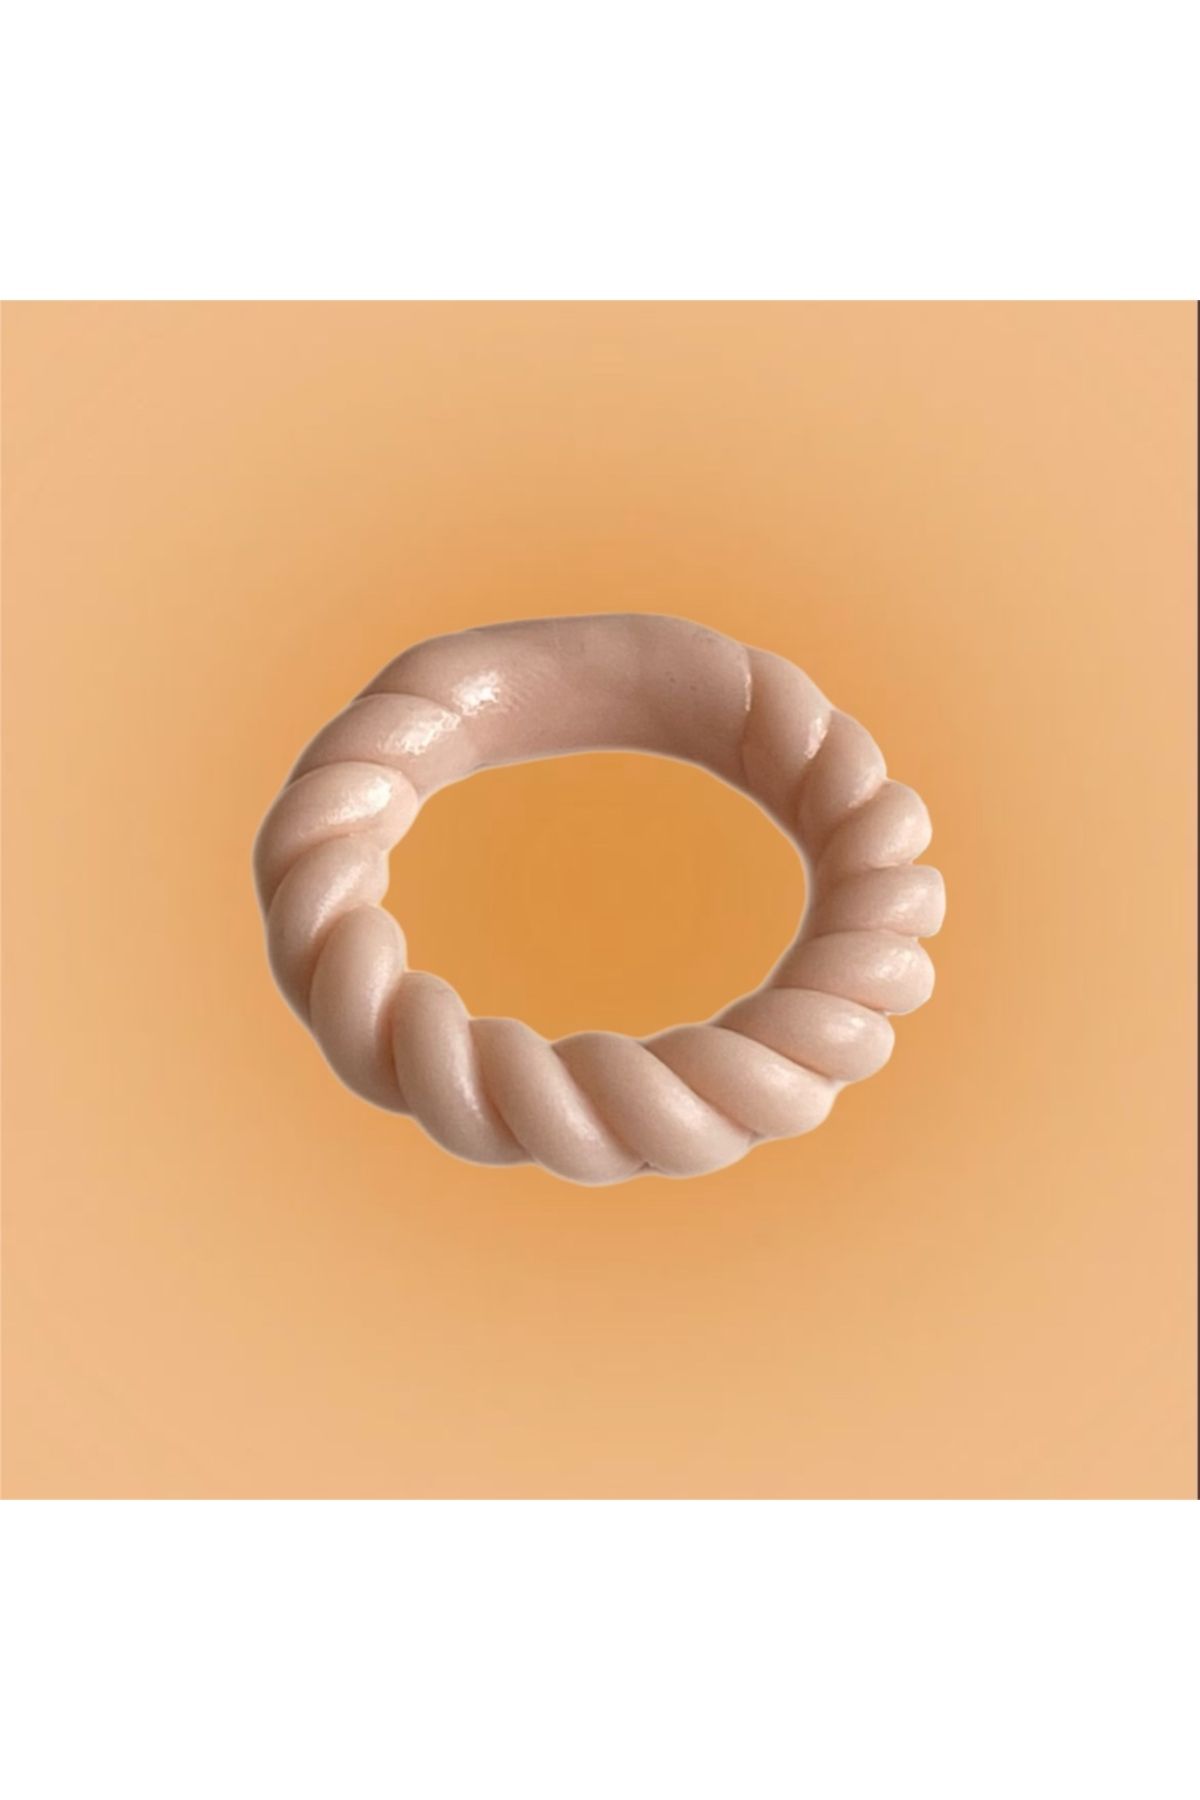 Charmzy Handmade Swirl Clay Ring Thin El Yapımı Polimer Kil Yüzük